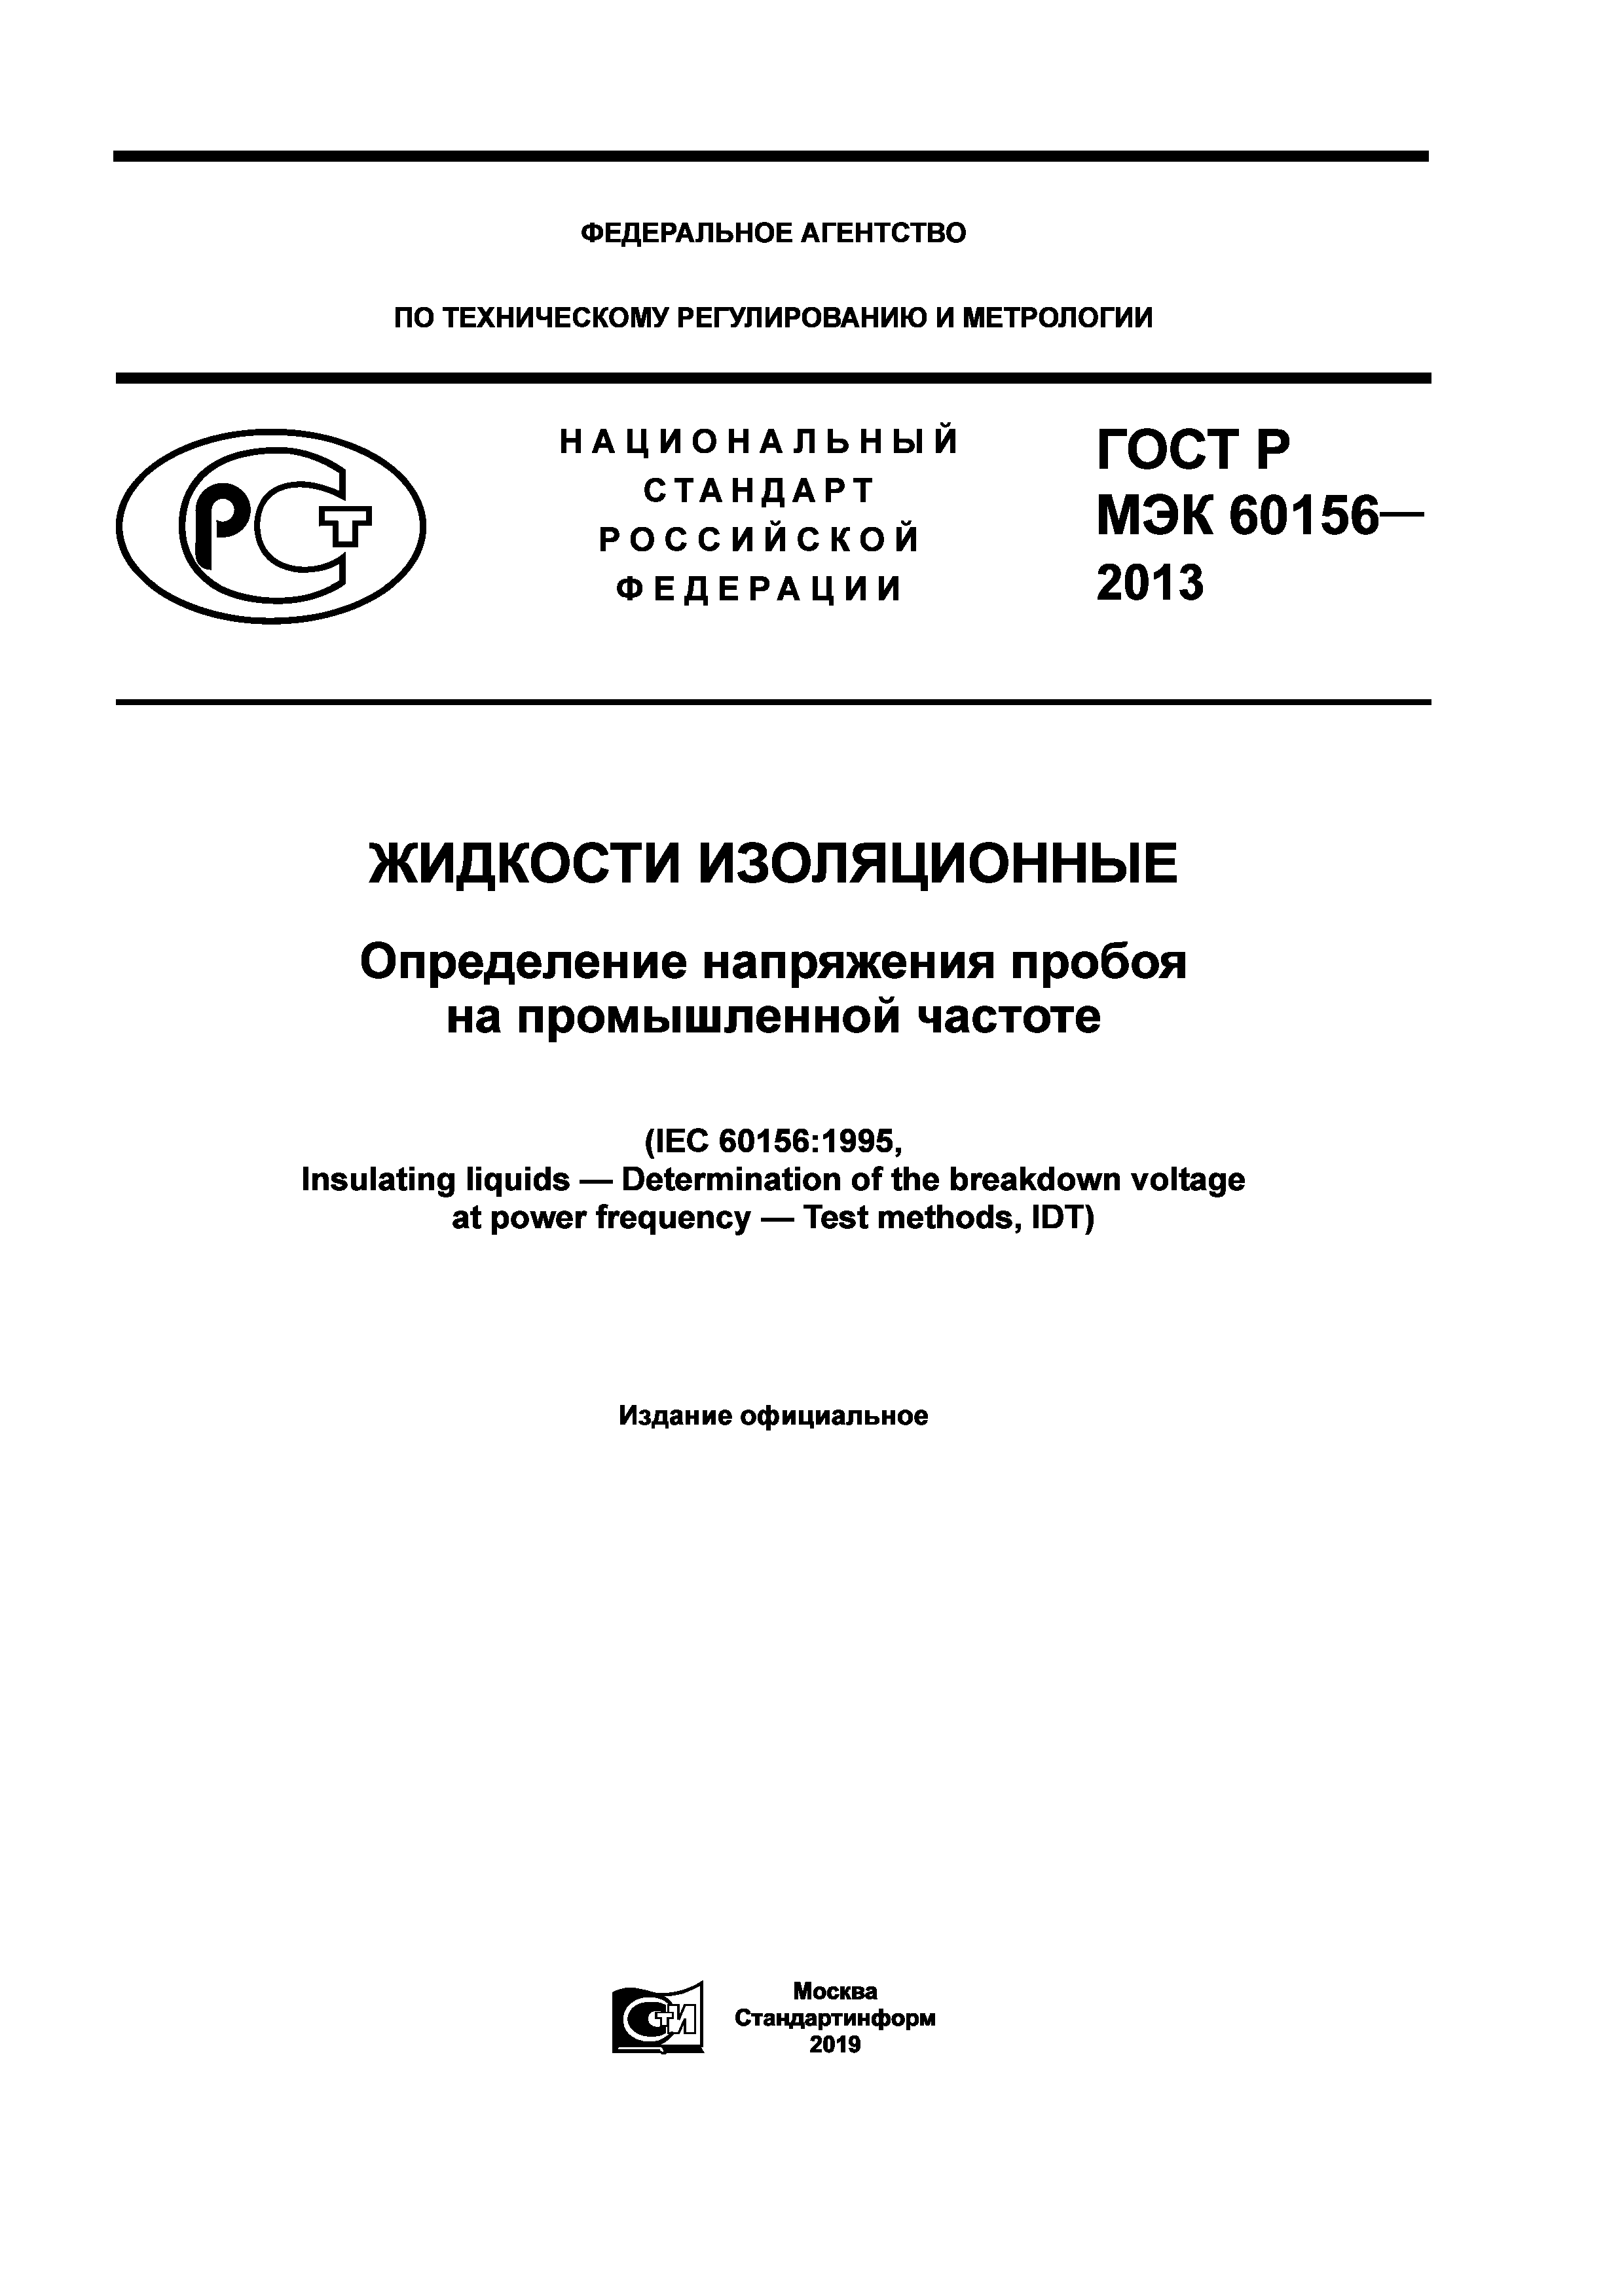 ГОСТ Р МЭК 60156-2013